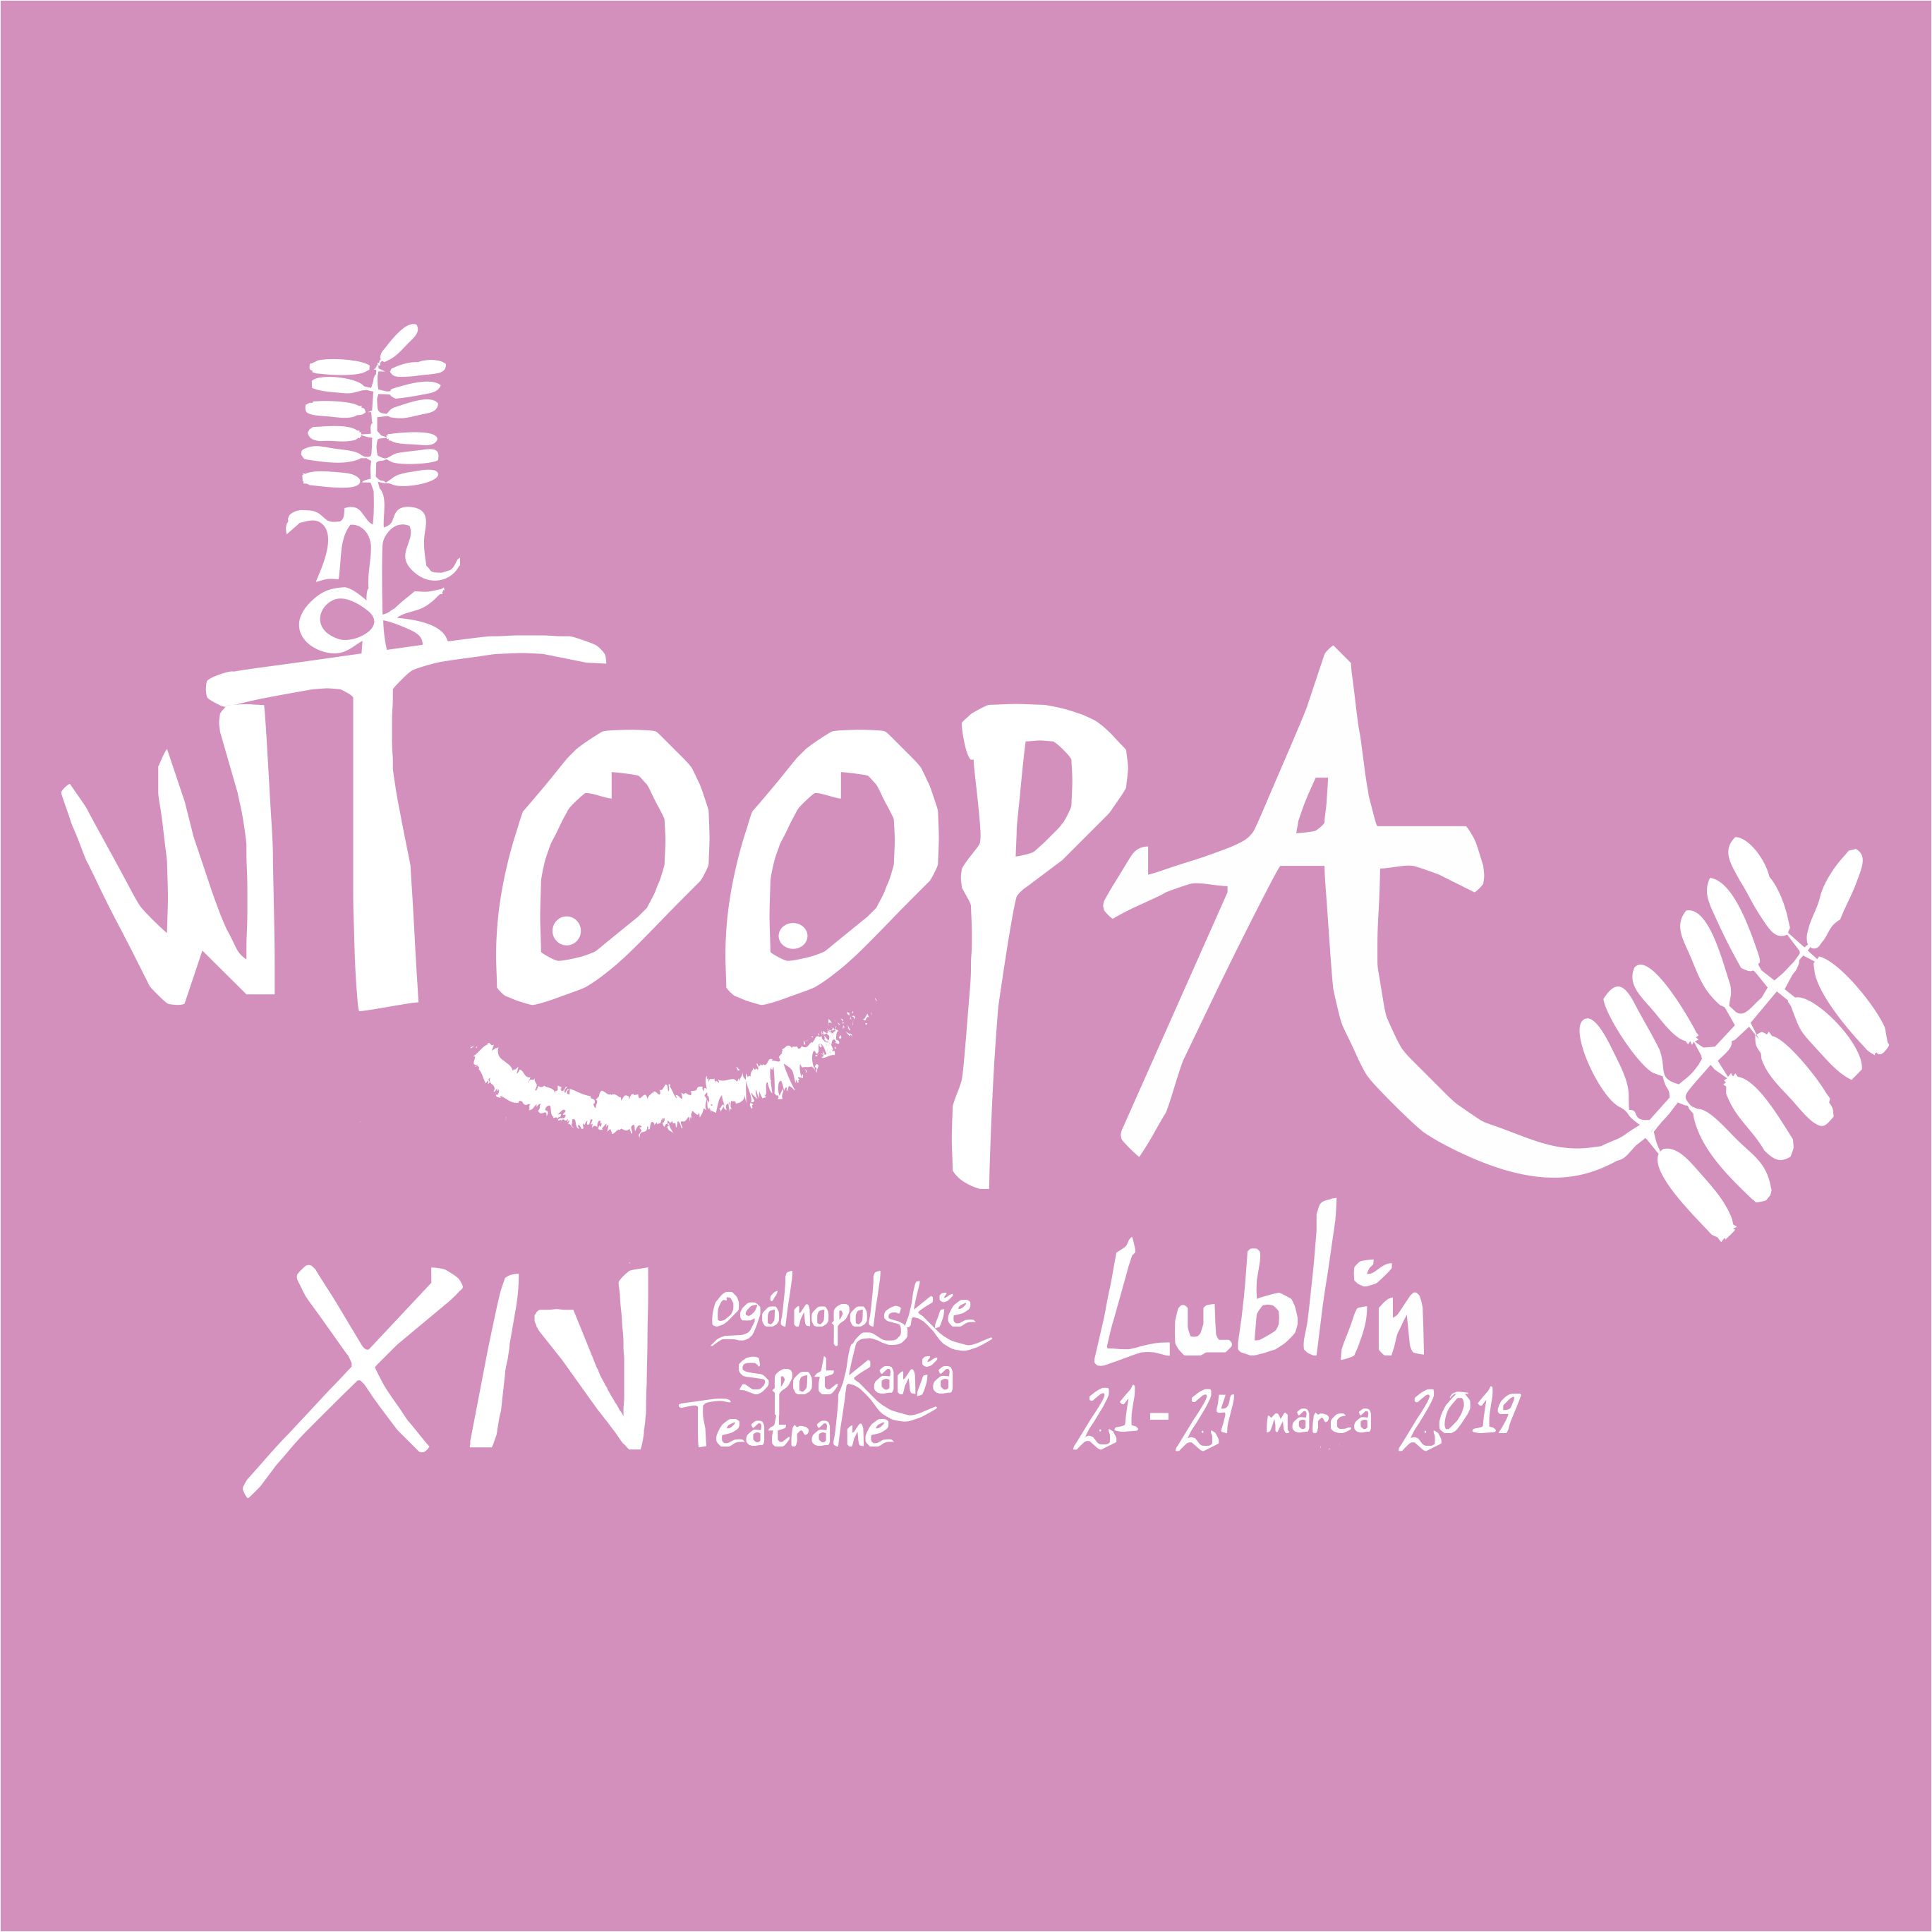 XIV WTOOPA Lublin 2019 | Czternaste Ogólnopolskie Spotkania Teatralne